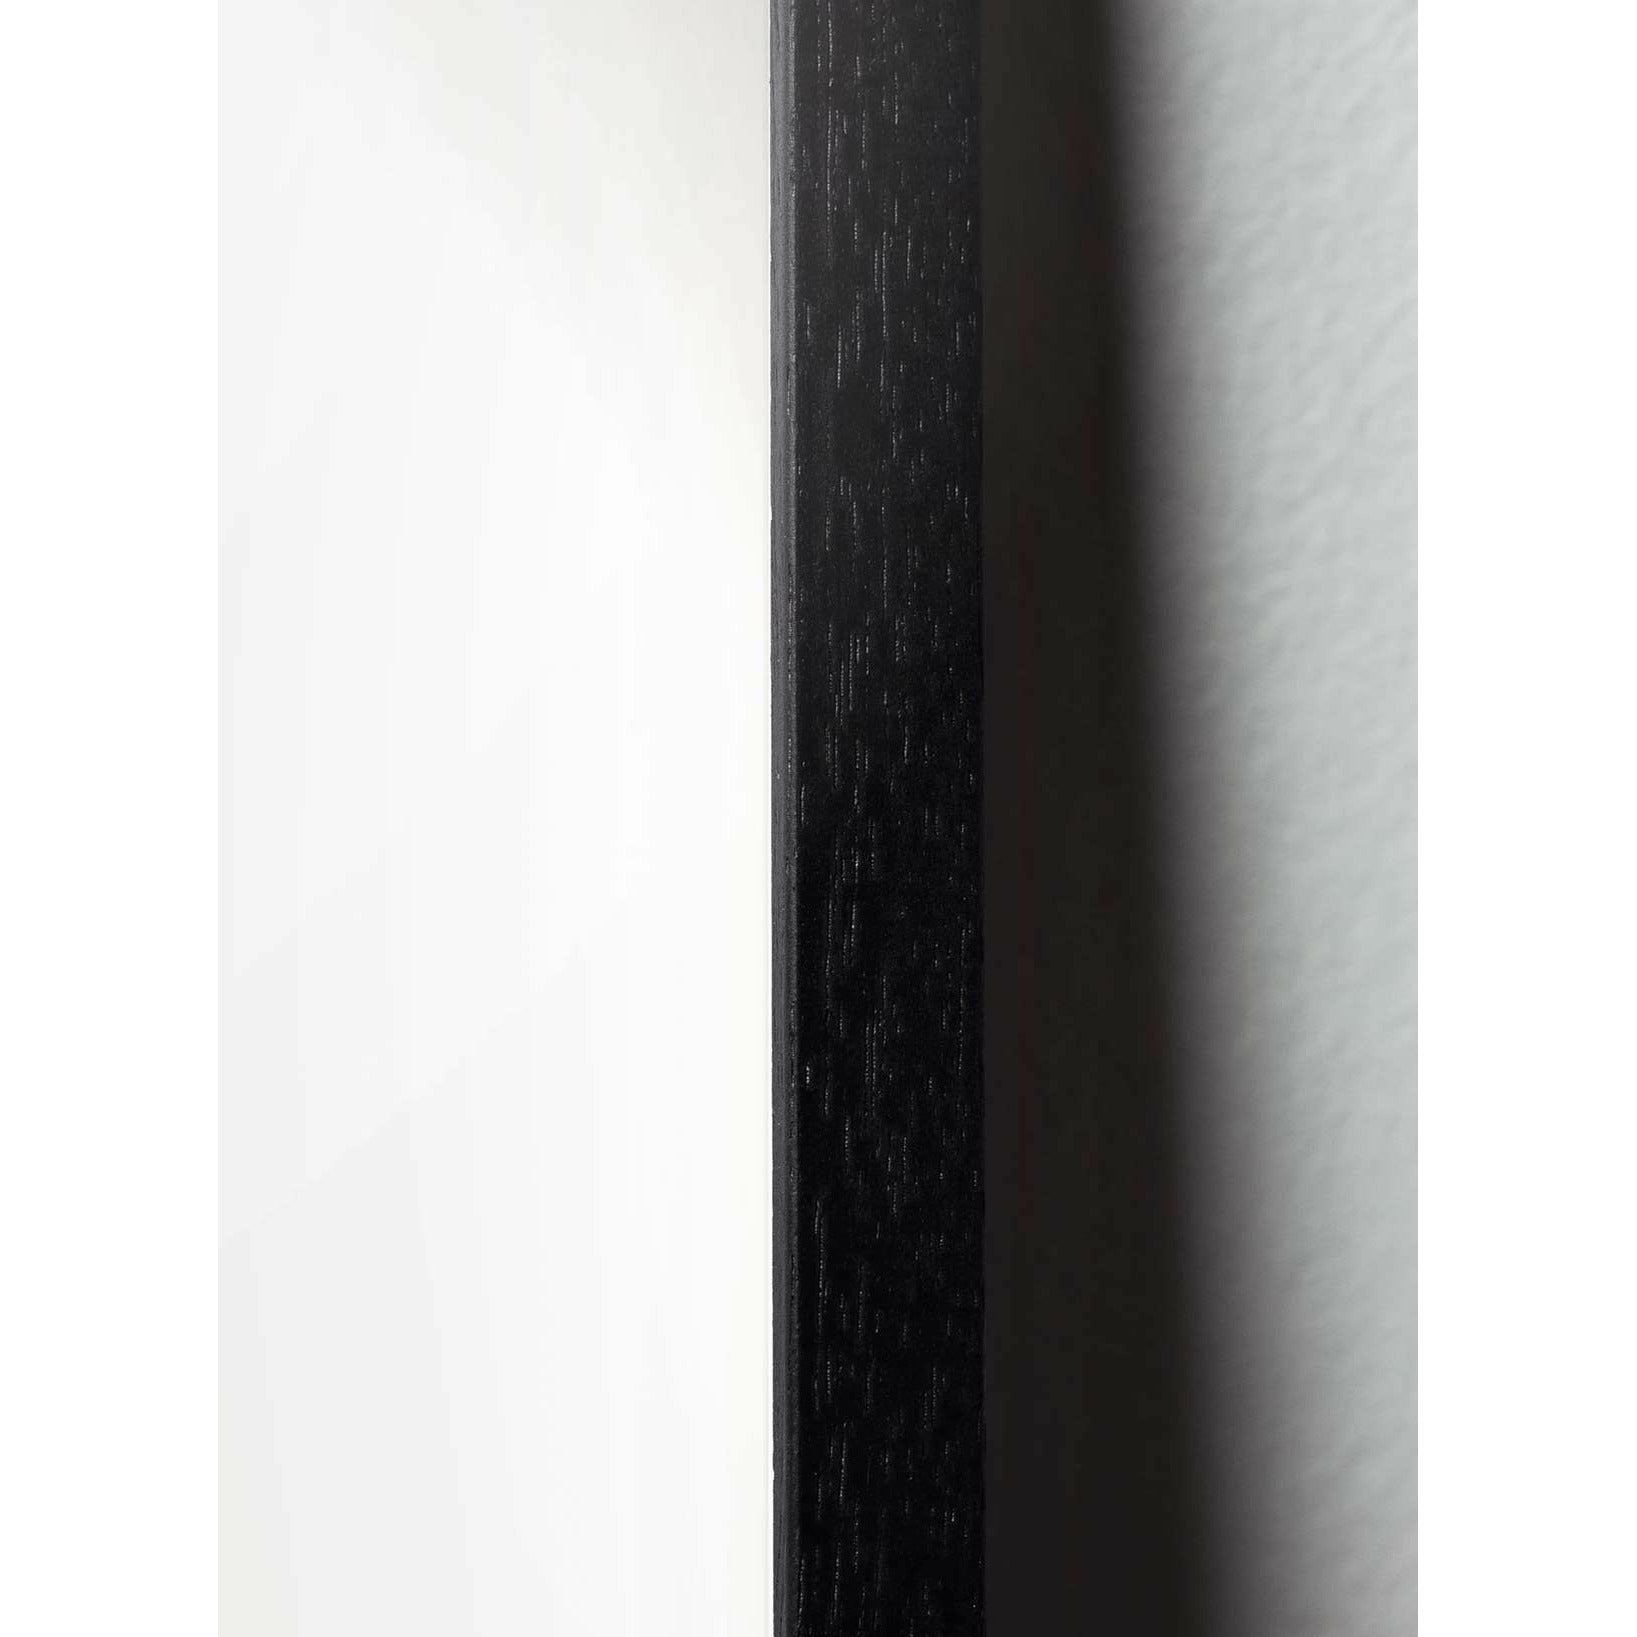 Plakat w formacie jaja pomysłu, rama w czarnym lakierowanym drewnie 30x40 cm, czarny